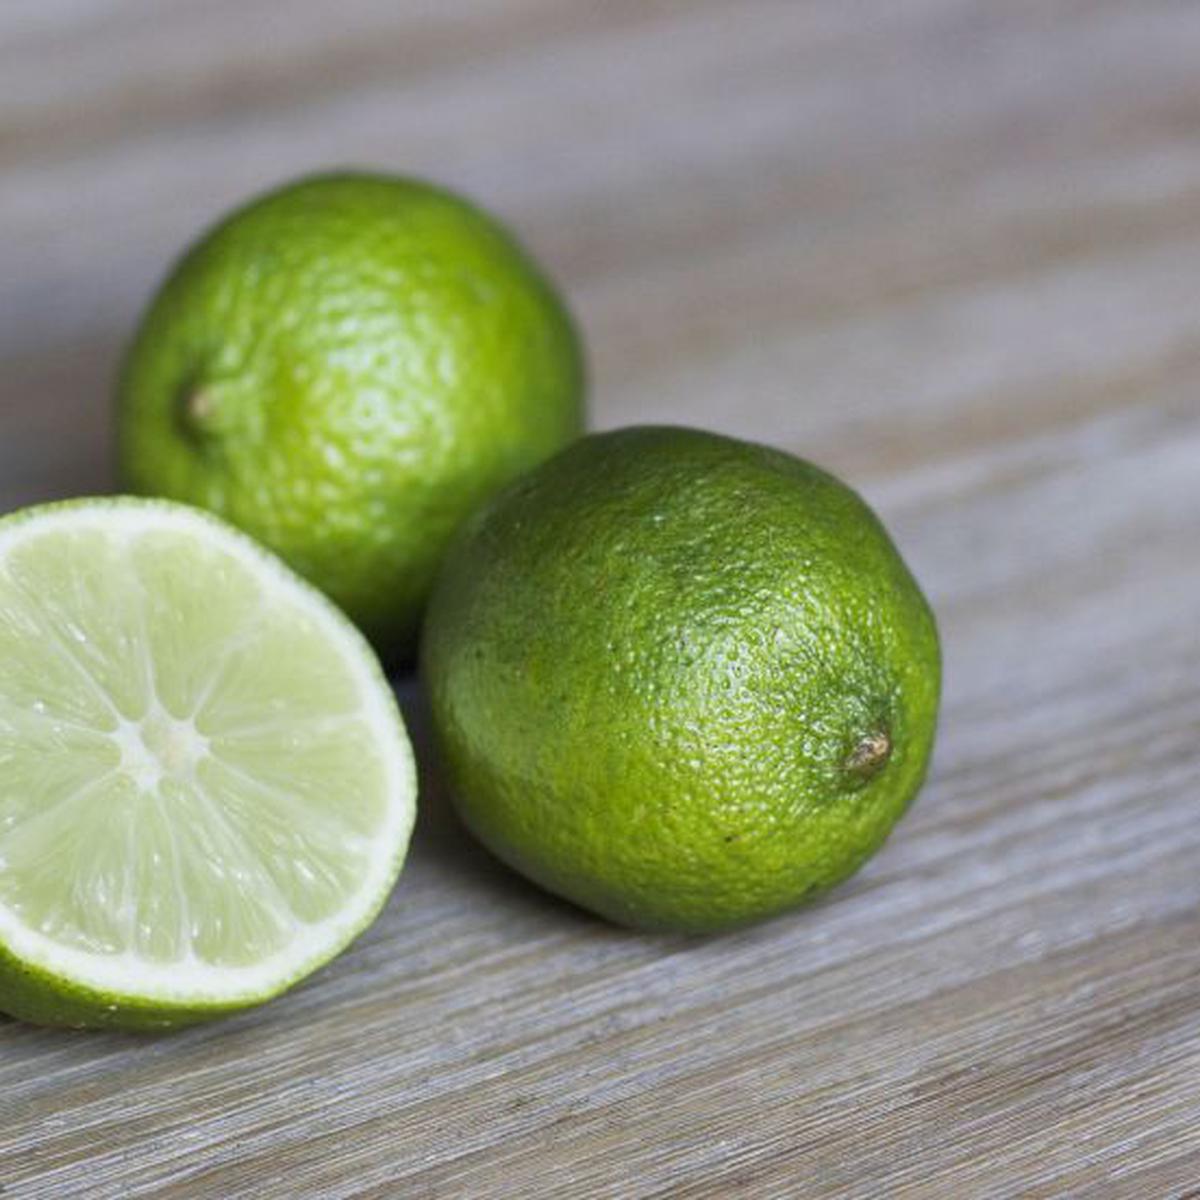 En qué casos el jugo de limón tu para quitar manchas ropa? | RESPUESTAS | MAG.